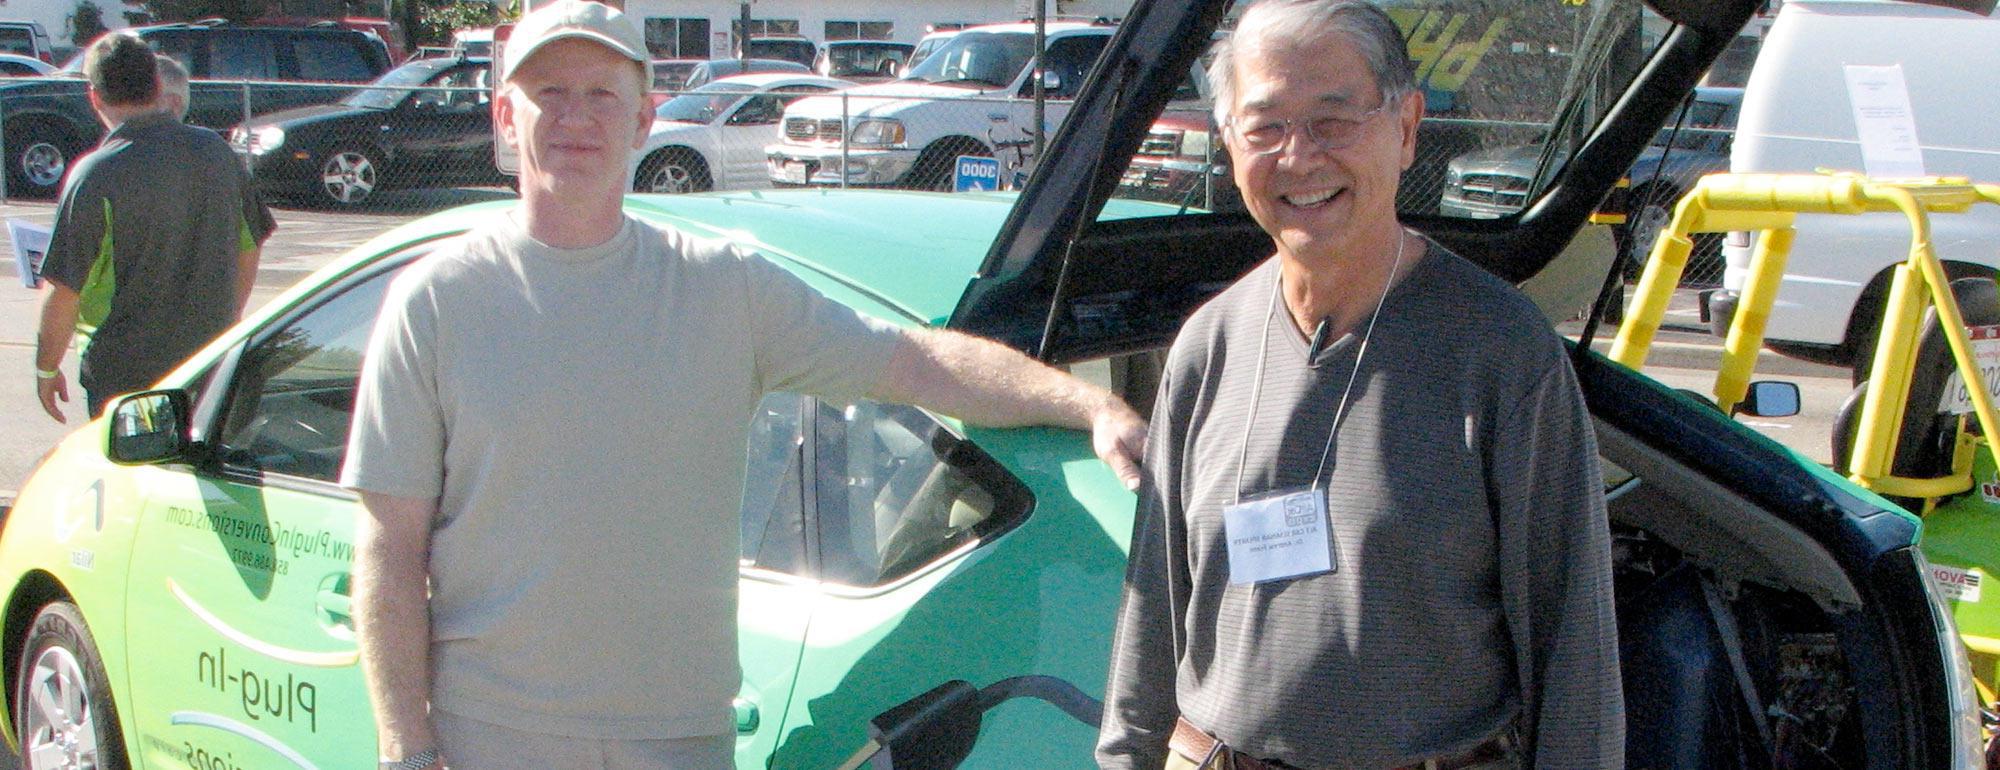 Two men pose next an electric car